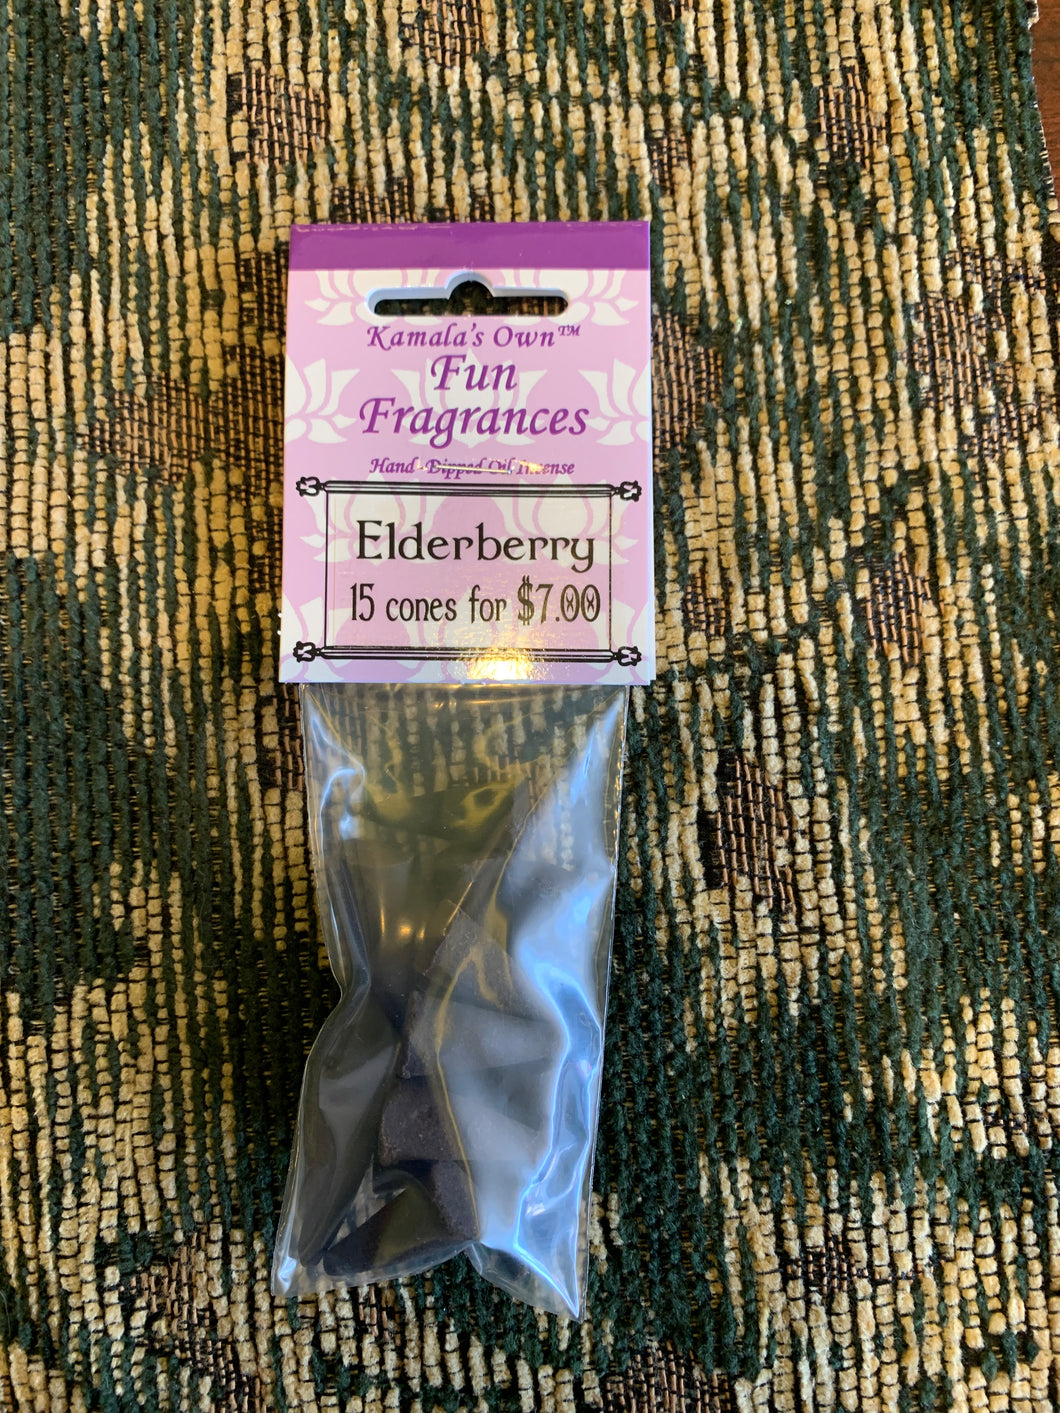 Elderberry cones